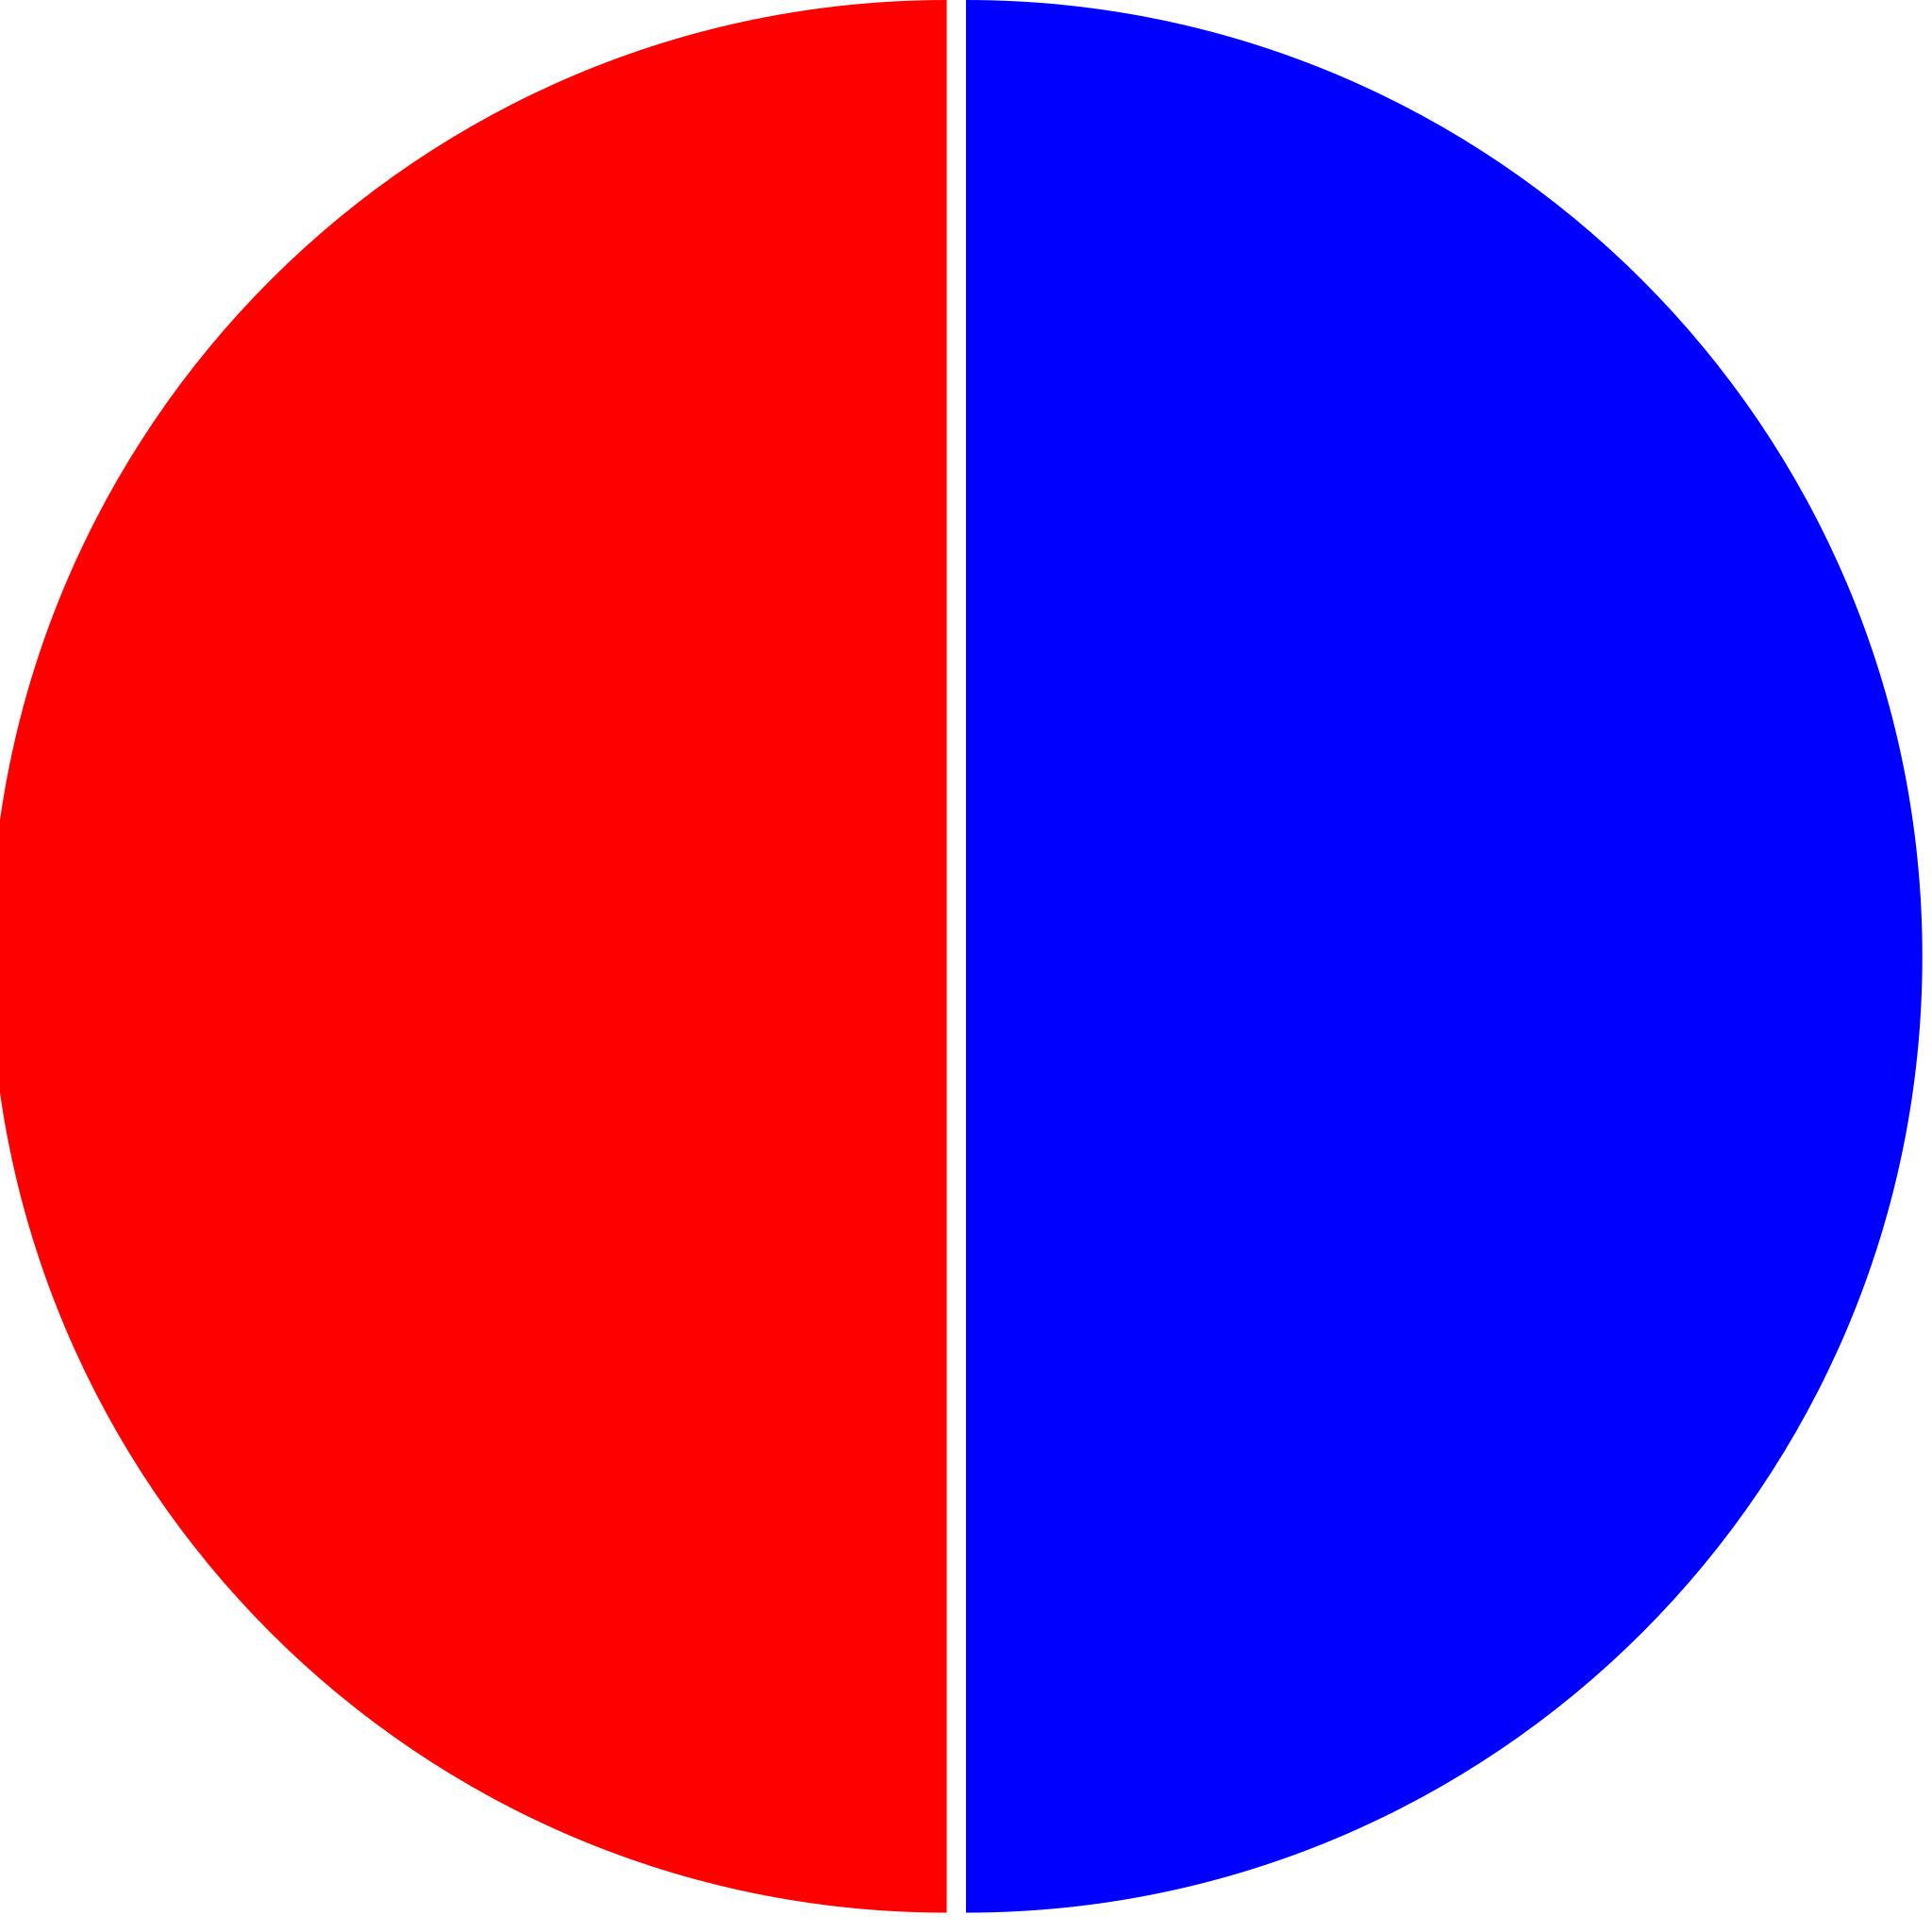 Красный полукруг. «Красный, желтый, синий II» Эльсуорт Келли. Красно синий круг. Красный и синий. Круг разделенный на две части.